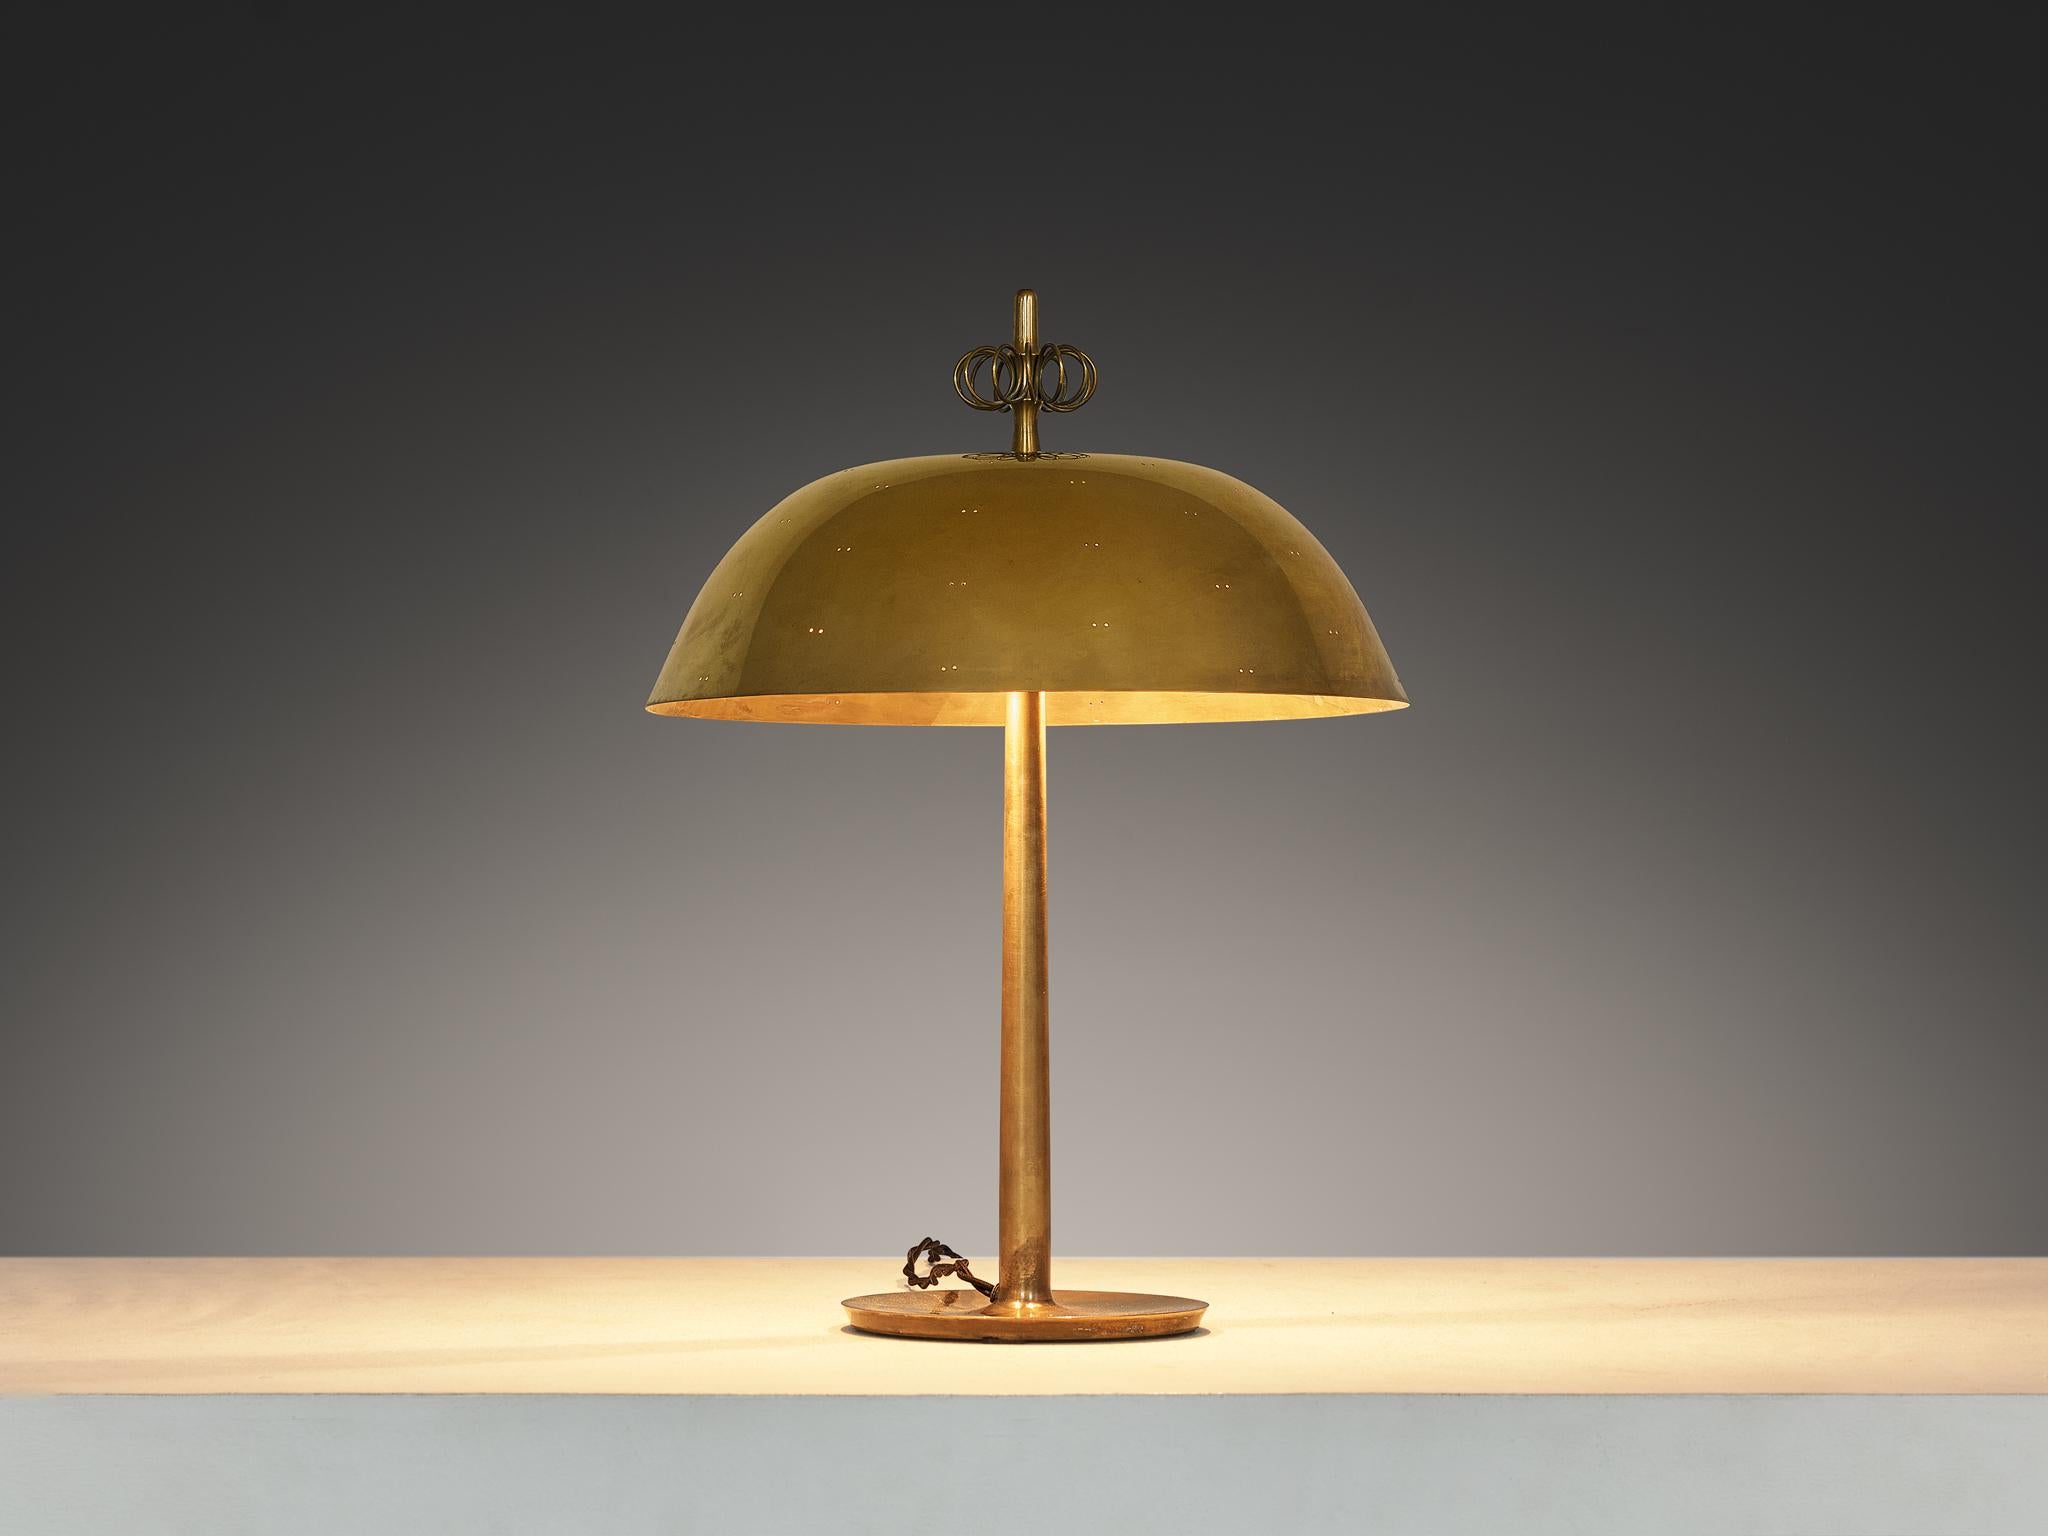 Paavo Tynell pour Taito Oy, lampe de table, modèle '9211', laiton, Finlande, années 1940
 
Une pièce vraiment magnifique qui se distingue par tous les aspects de sa conception : exécution, utilisation des matériaux, savoir-faire et détails. Paavo